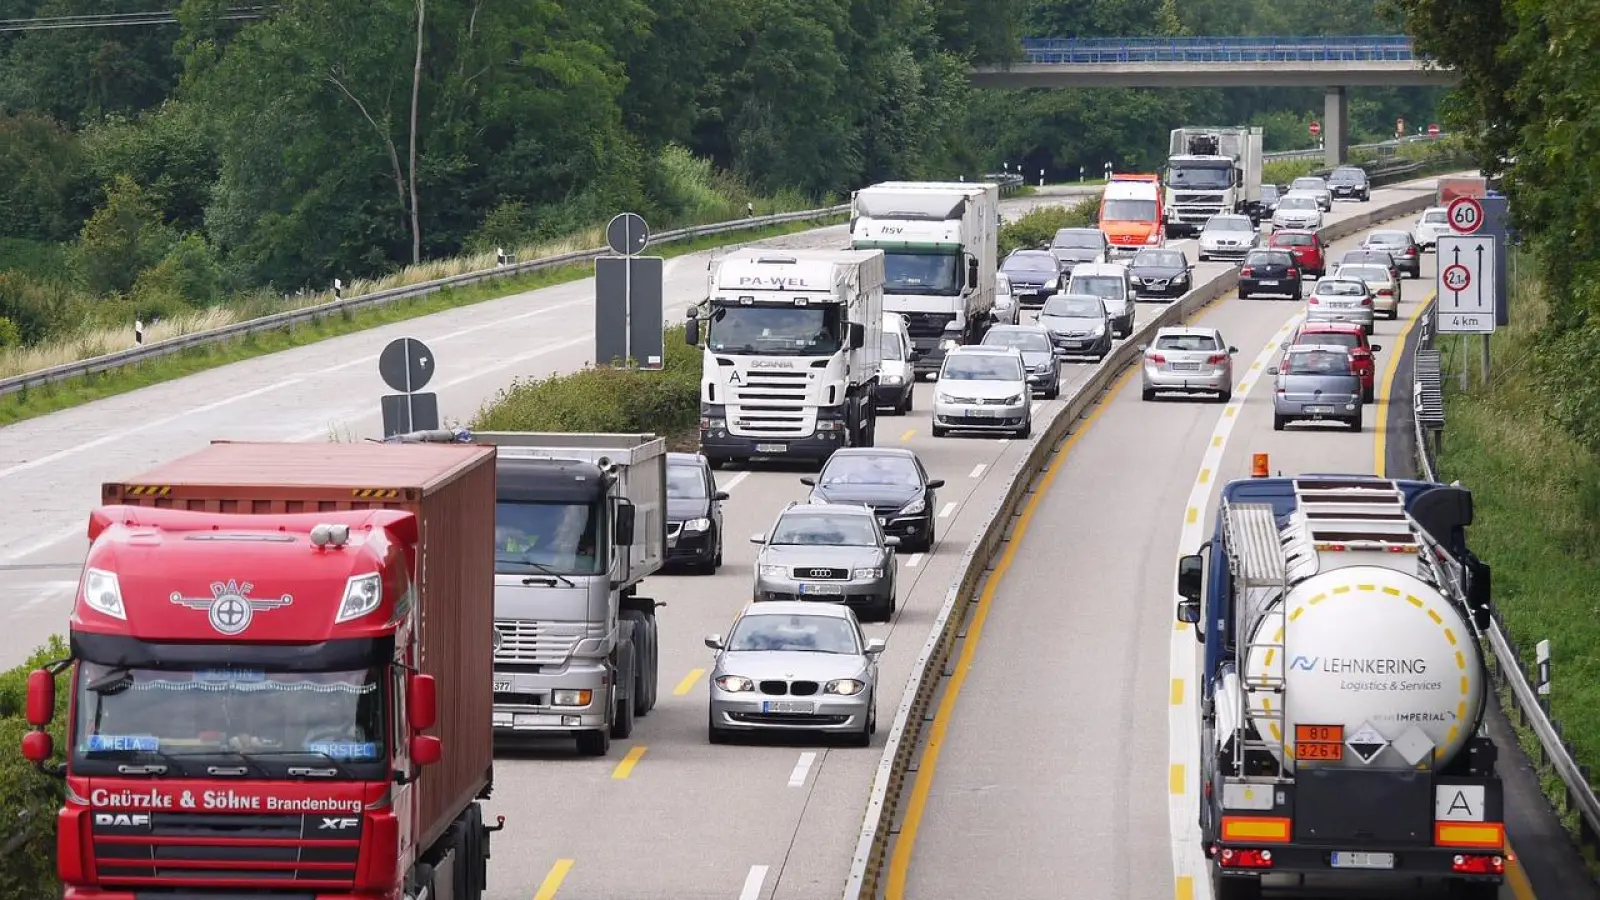 <b>Auf den Autobahnen</b> sind täglich unzählige Lastwagen unterwegs, um Güter von A nach B zu bringen. Rund 80 Prozent der hiesigen Nutzfahrzeuge sind allerdings Transporter und Handwerksfahrzeuge. (Foto: Pixabay/hpgruesen)